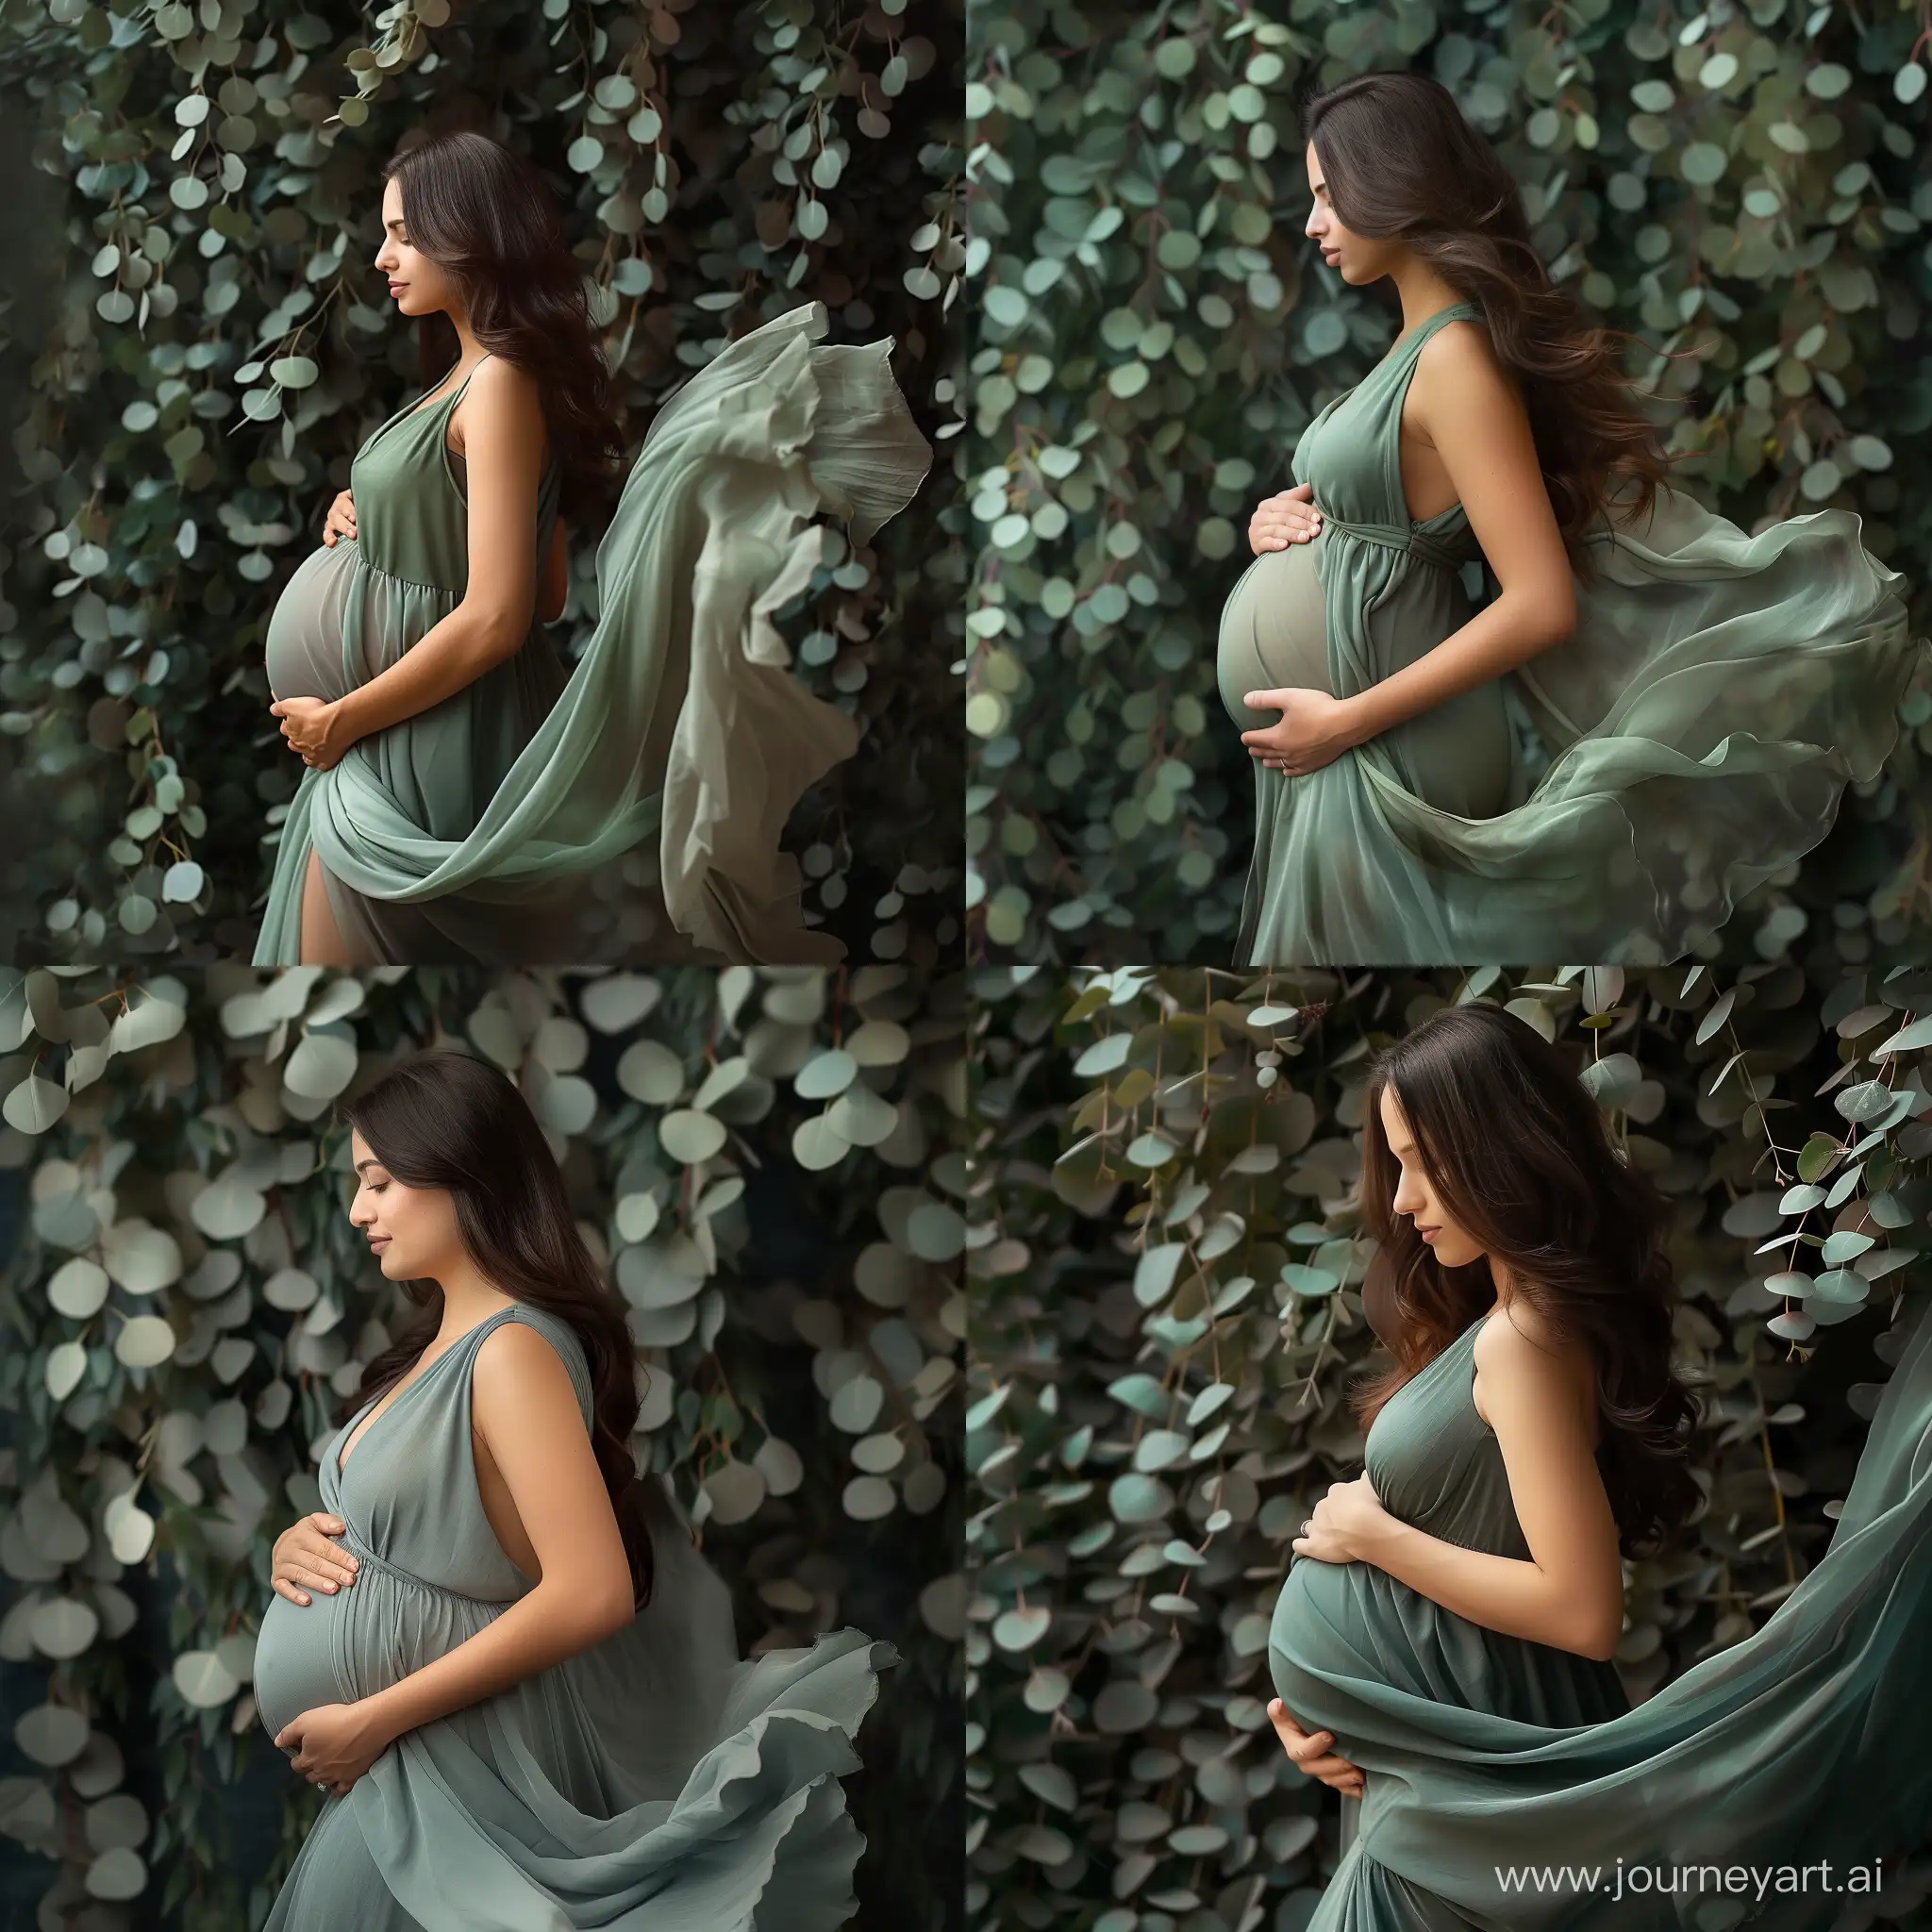 фотография беременной женщины в платье из тонкой летящей ткани цвета эвкалипт на фоне цвета эвкалипт стоит в профиль, повернута влево, смотрит на живот левая рука на животе, правая под животом